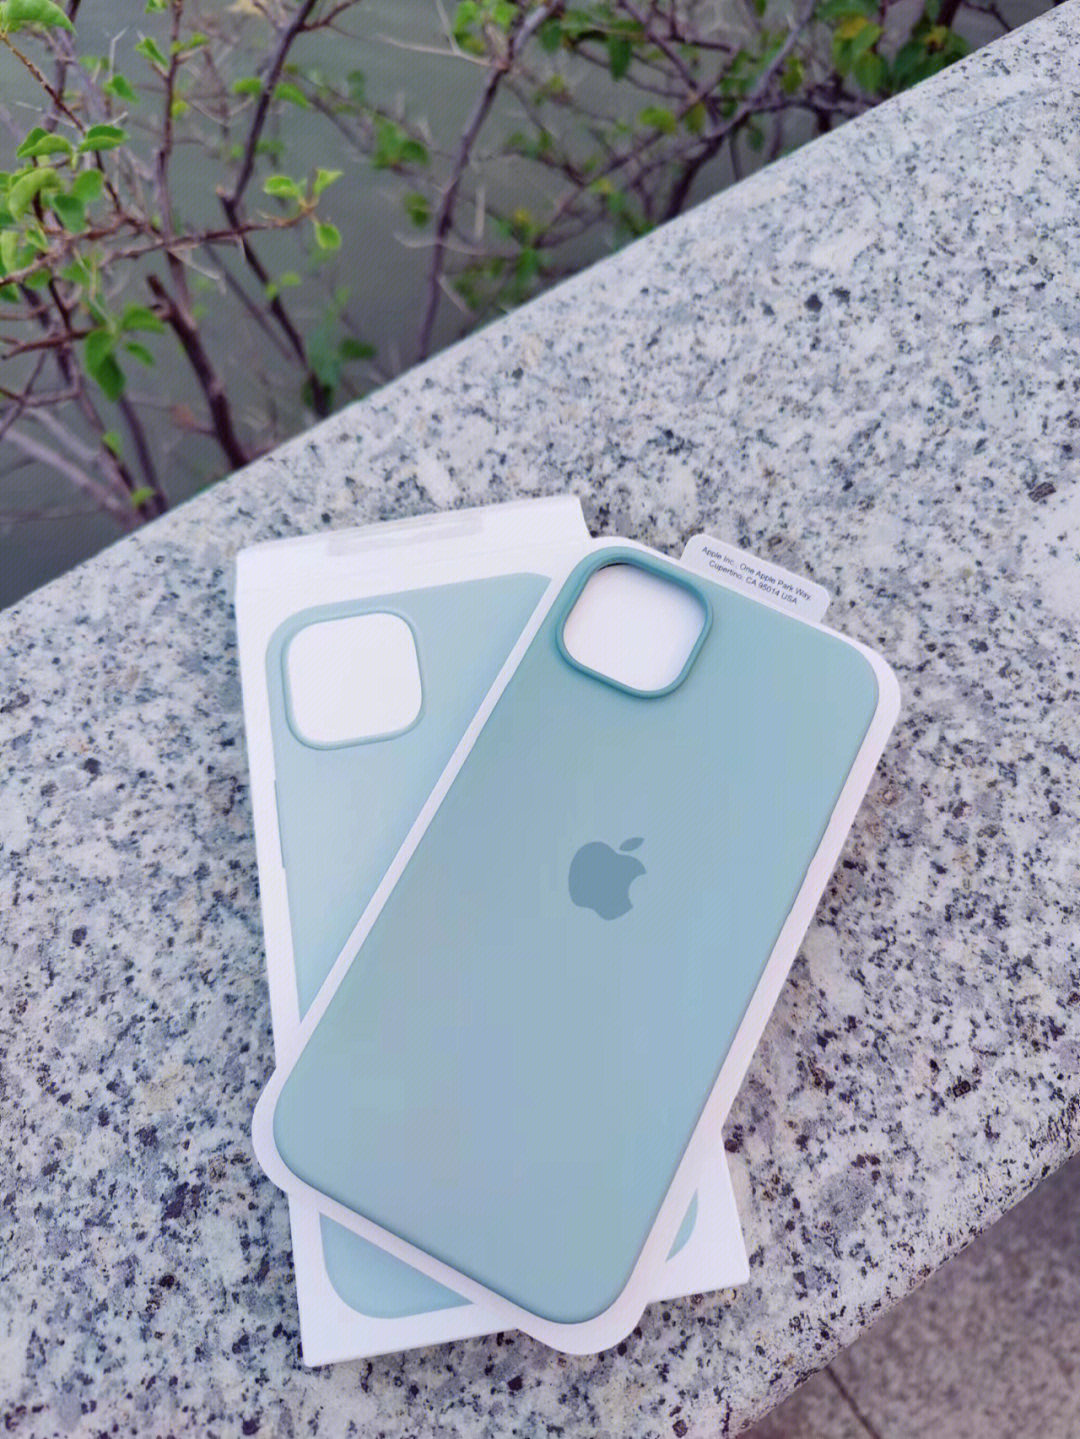 质感很强,手机戴上这个壳后看起来很漂亮#苹果液态硅胶手机壳#手机壳